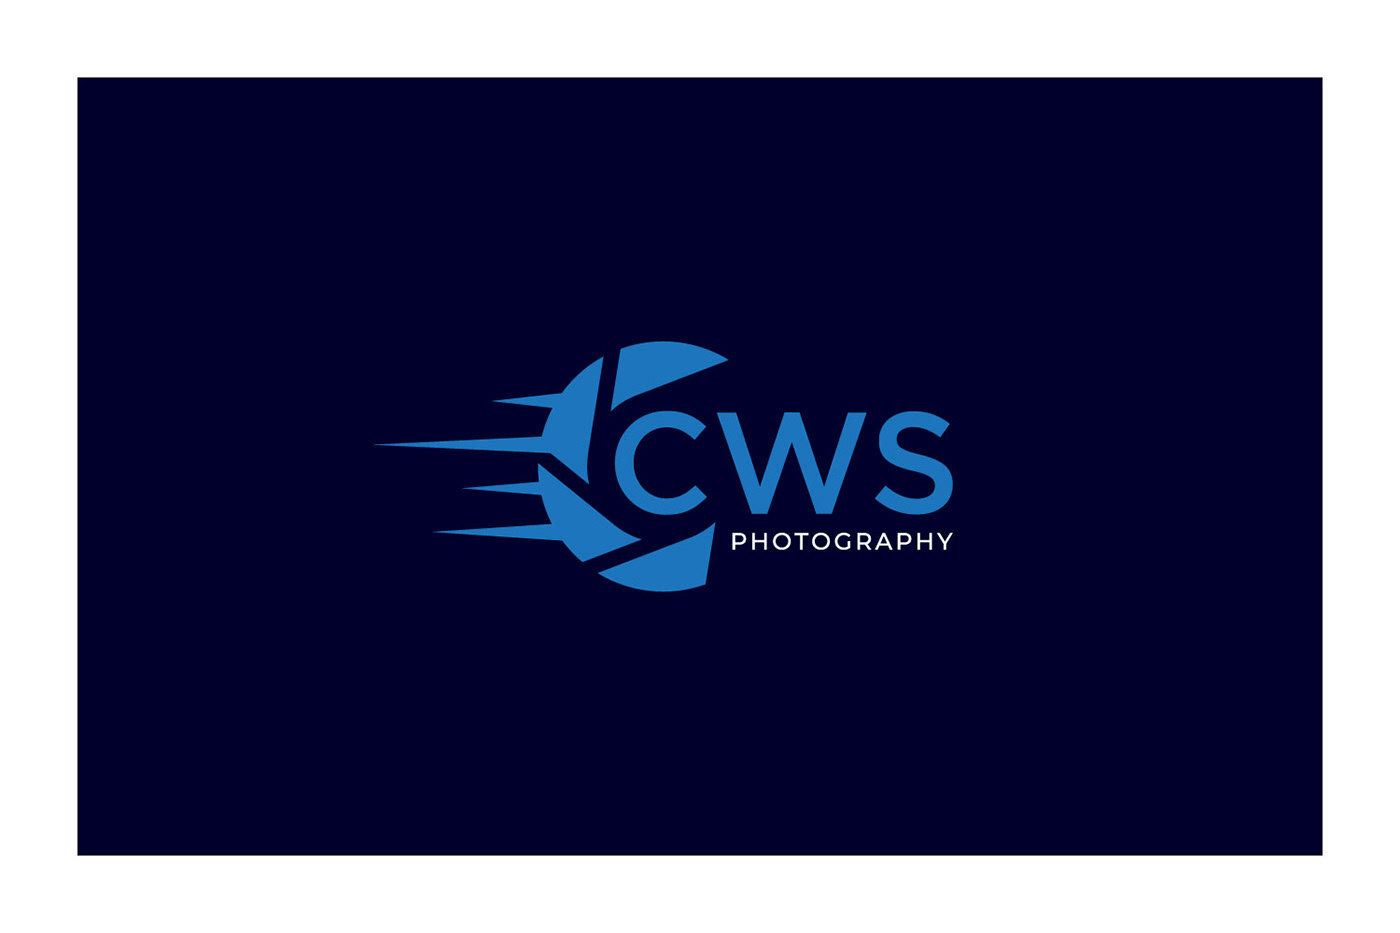 photography logo videography logo photo logo camera logo lens logo video logo multimedia logo personal photography logo photography business logo